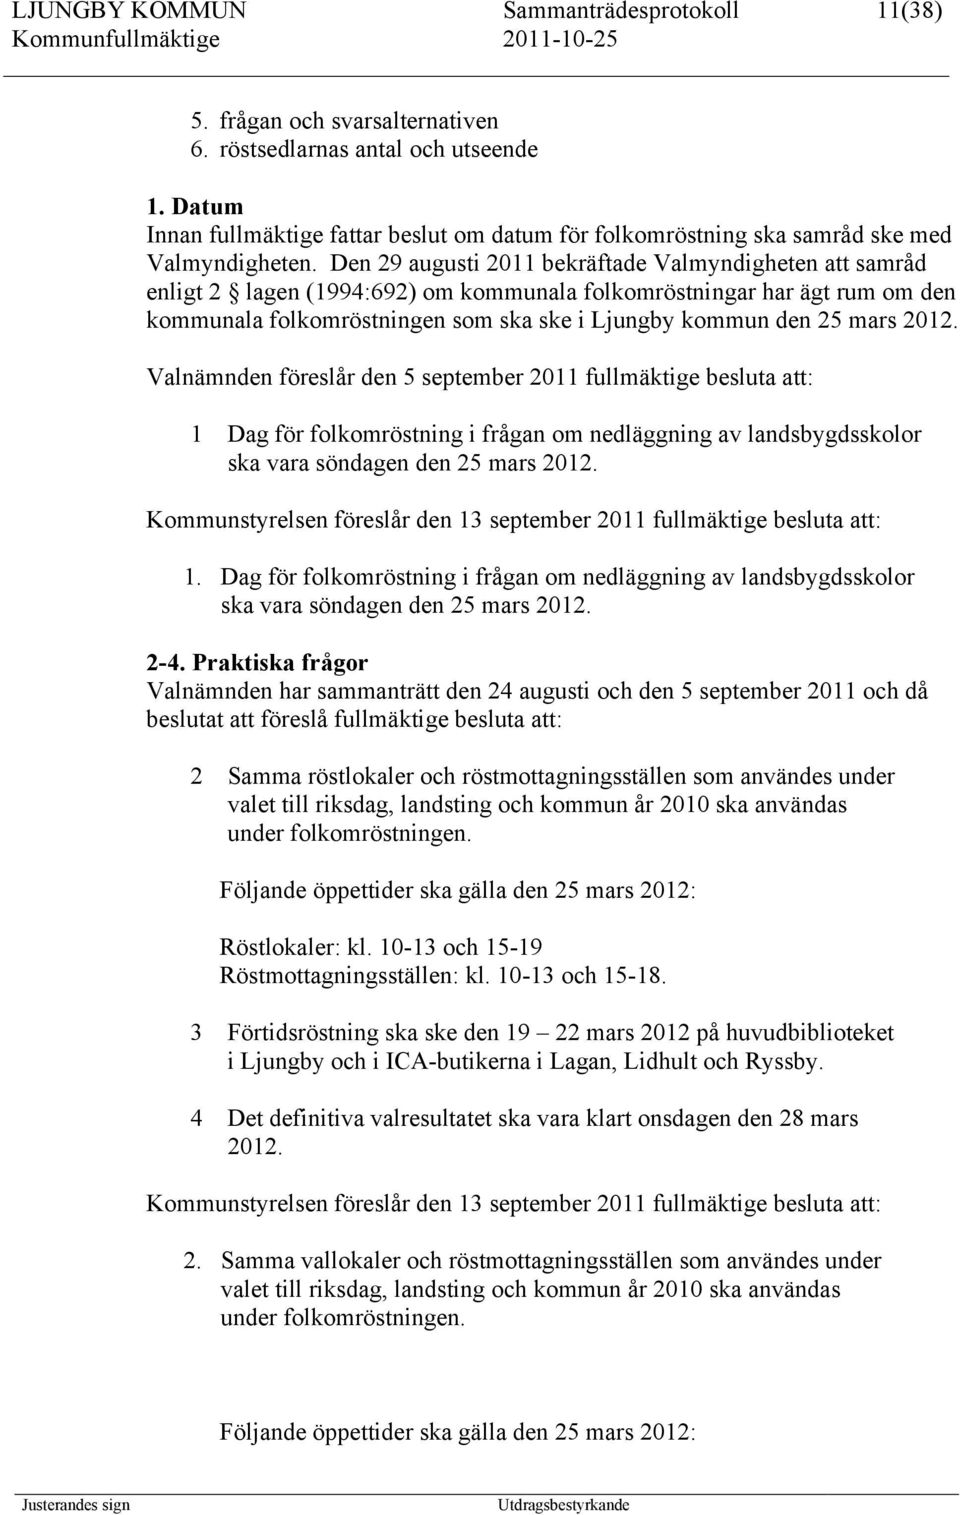 Den 29 augusti 2011 bekräftade Valmyndigheten att samråd enligt 2 lagen (1994:692) om kommunala folkomröstningar har ägt rum om den kommunala folkomröstningen som ska ske i Ljungby kommun den 25 mars